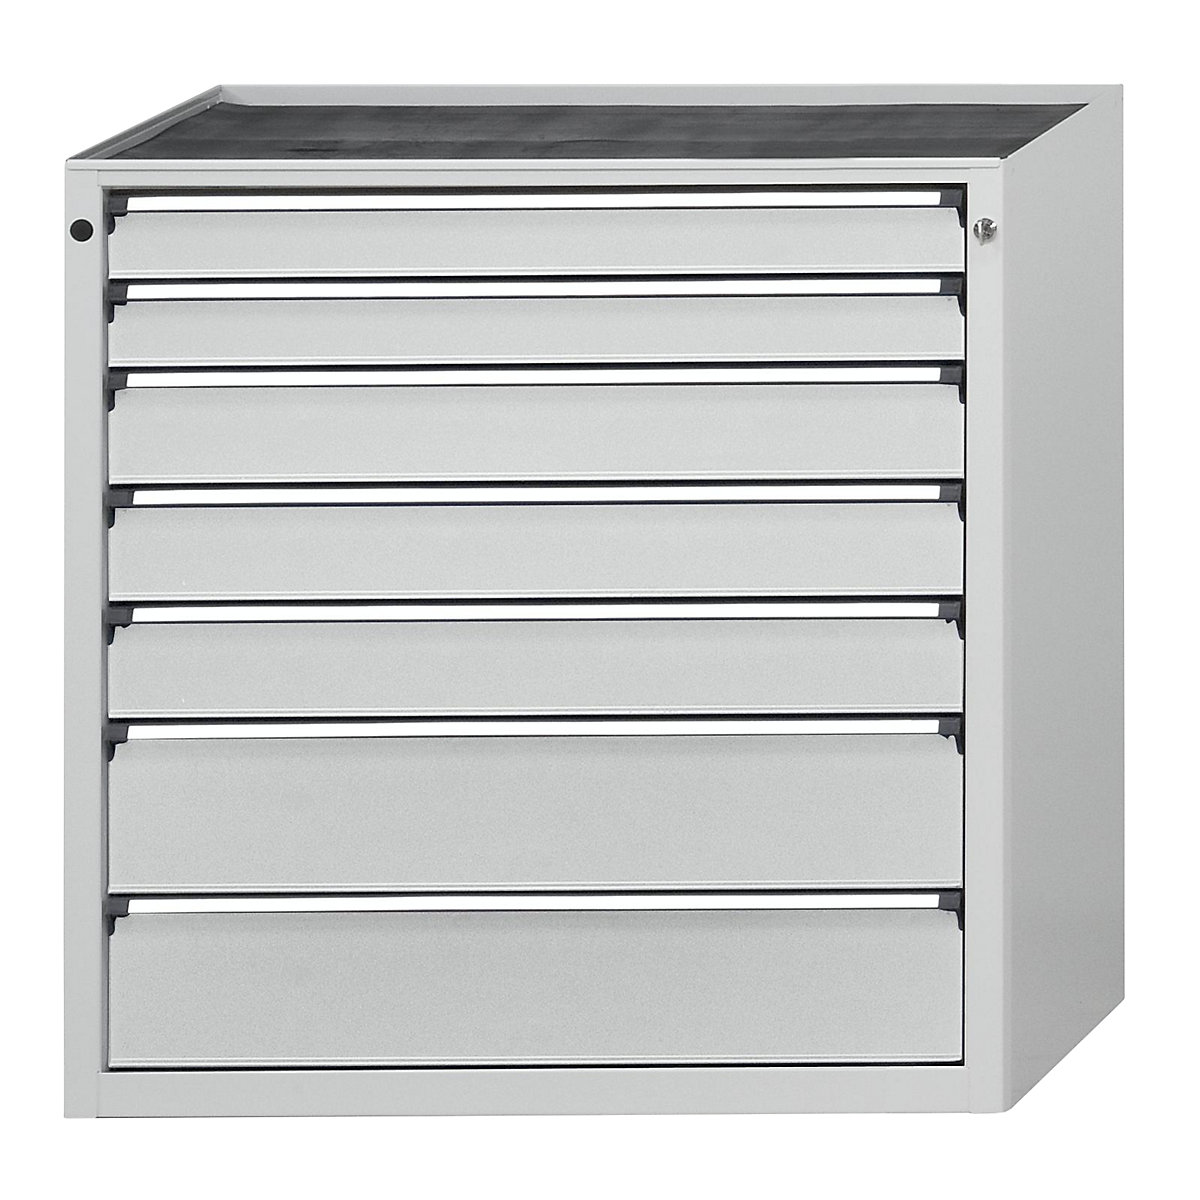 ANKE – Armoire à tiroirs, l x p 910 x 675 mm, 7 tiroirs, hauteur 980 mm, façade gris clair